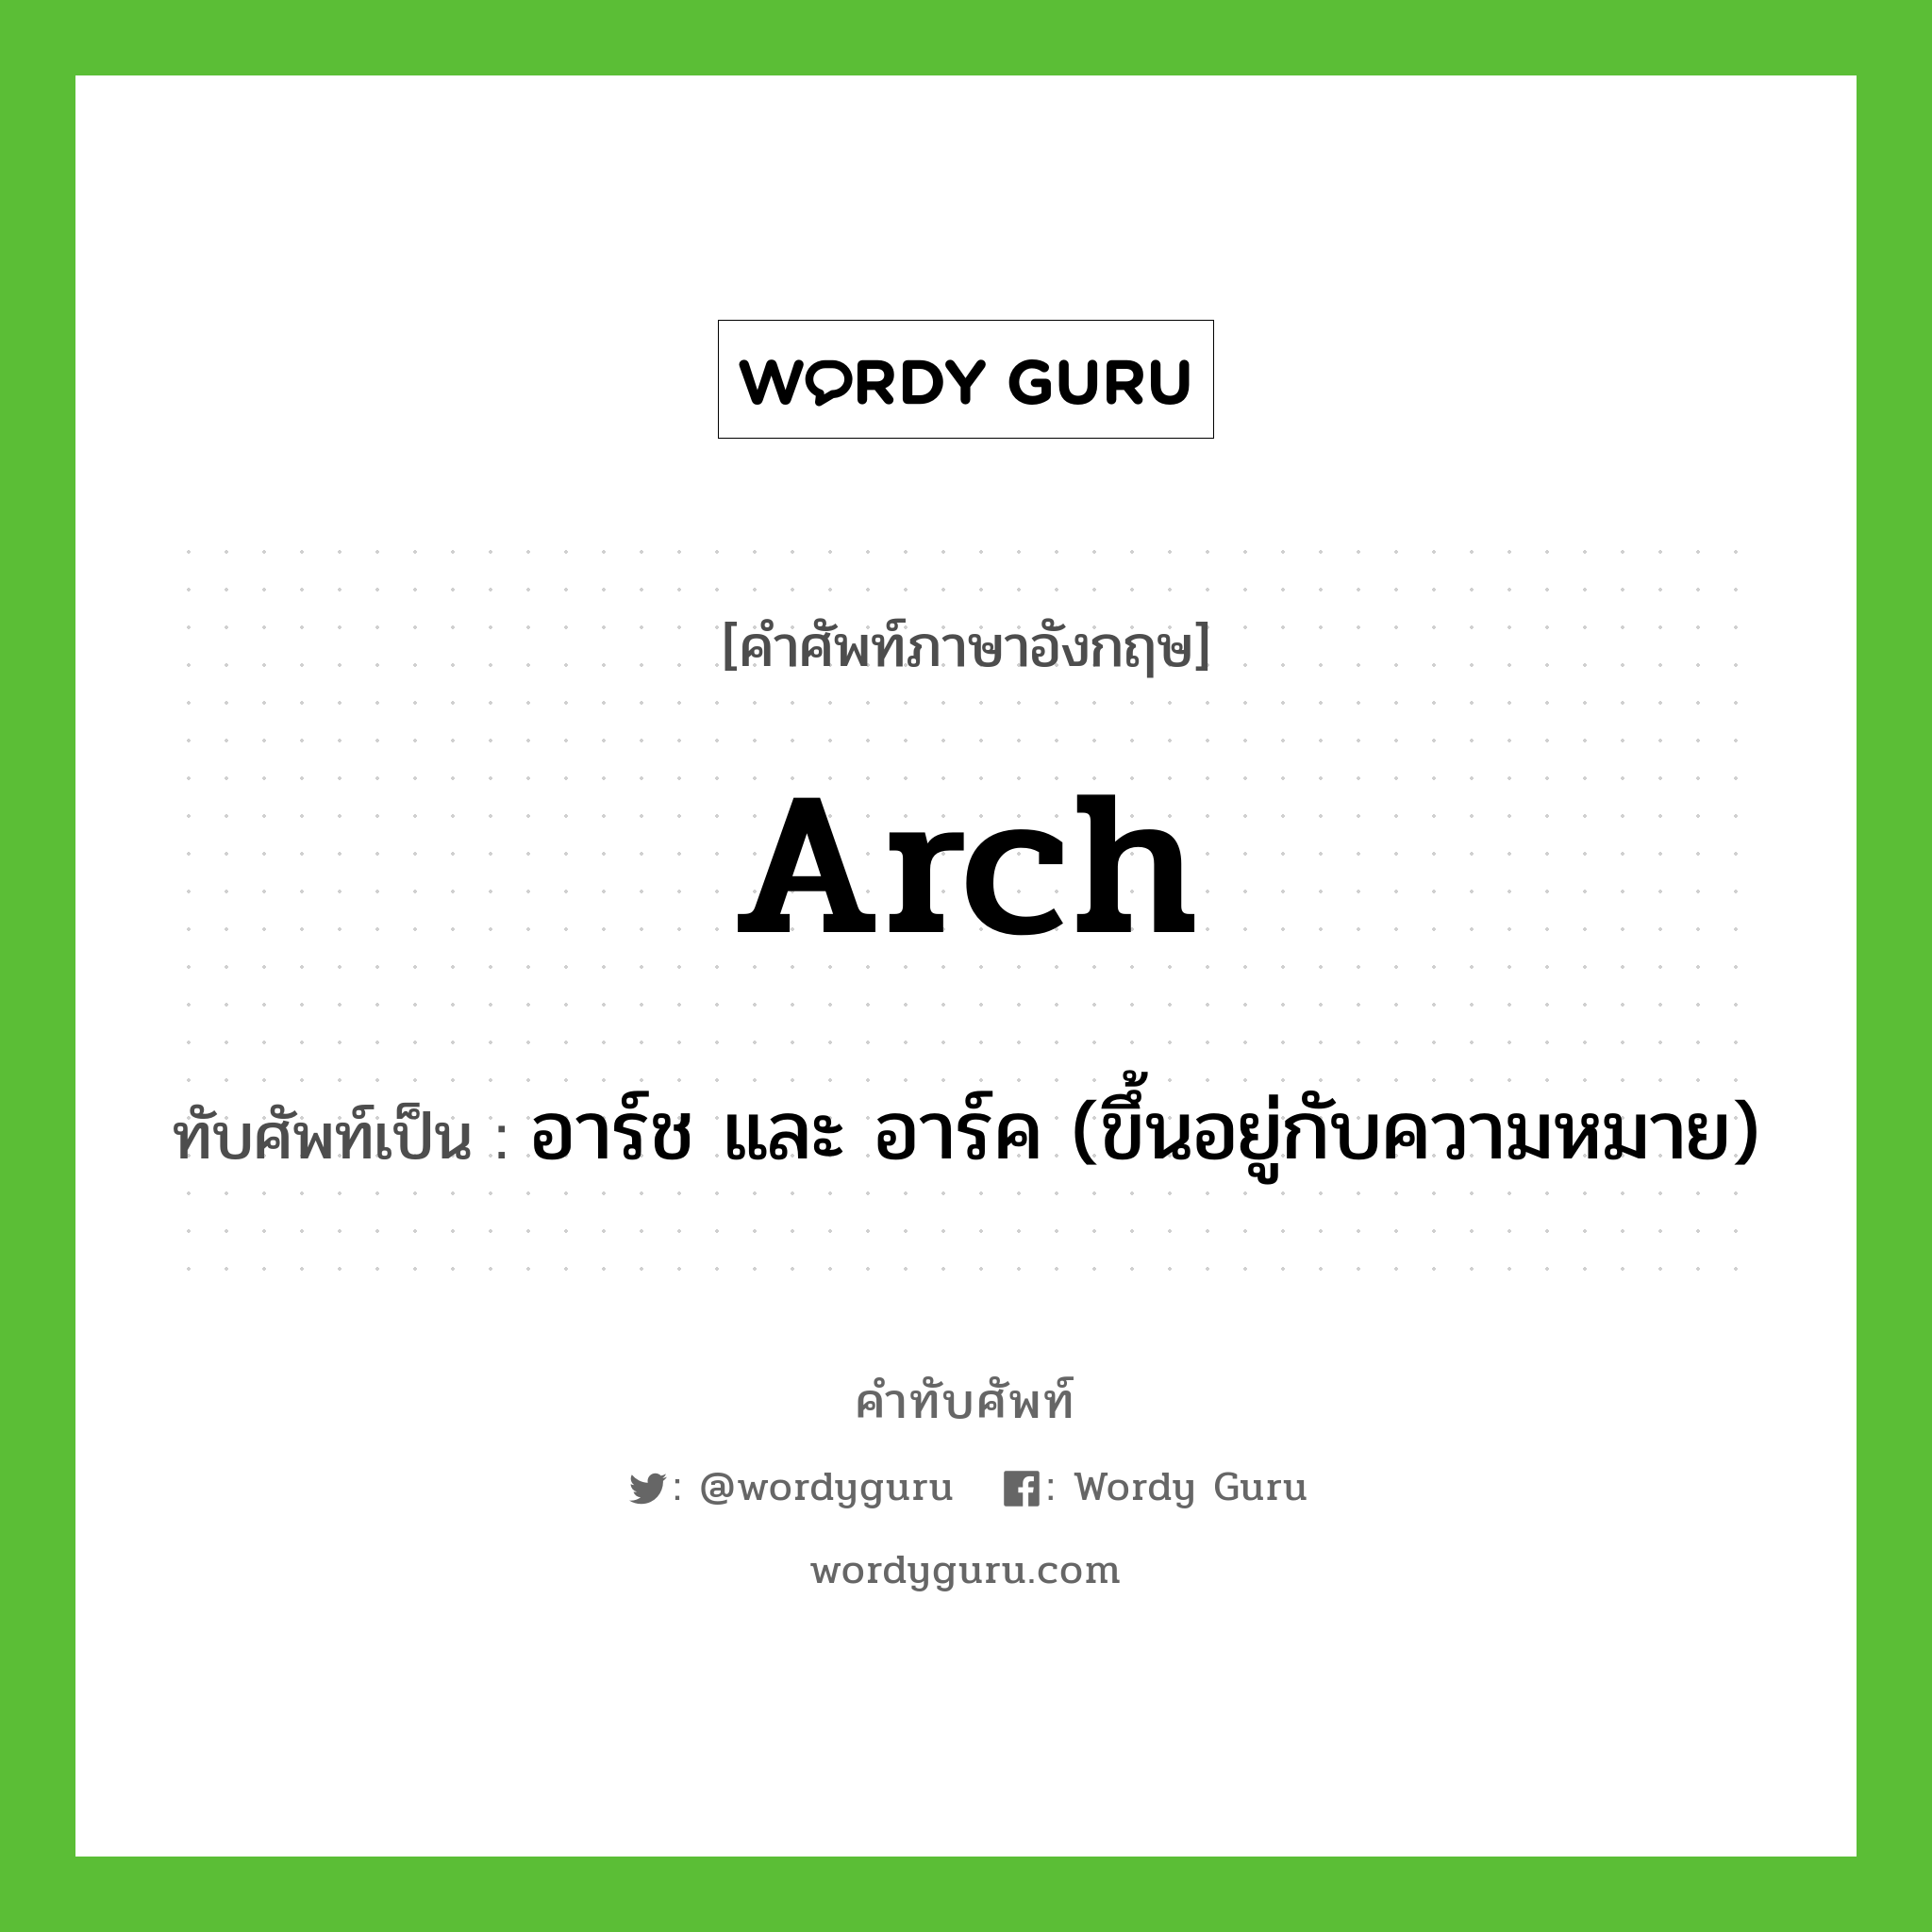 อาร์ช และ อาร์ค (ขึ้นอยู่กับความหมาย) เขียนอย่างไร?, คำศัพท์ภาษาอังกฤษ อาร์ช และ อาร์ค (ขึ้นอยู่กับความหมาย) ทับศัพท์เป็น arch